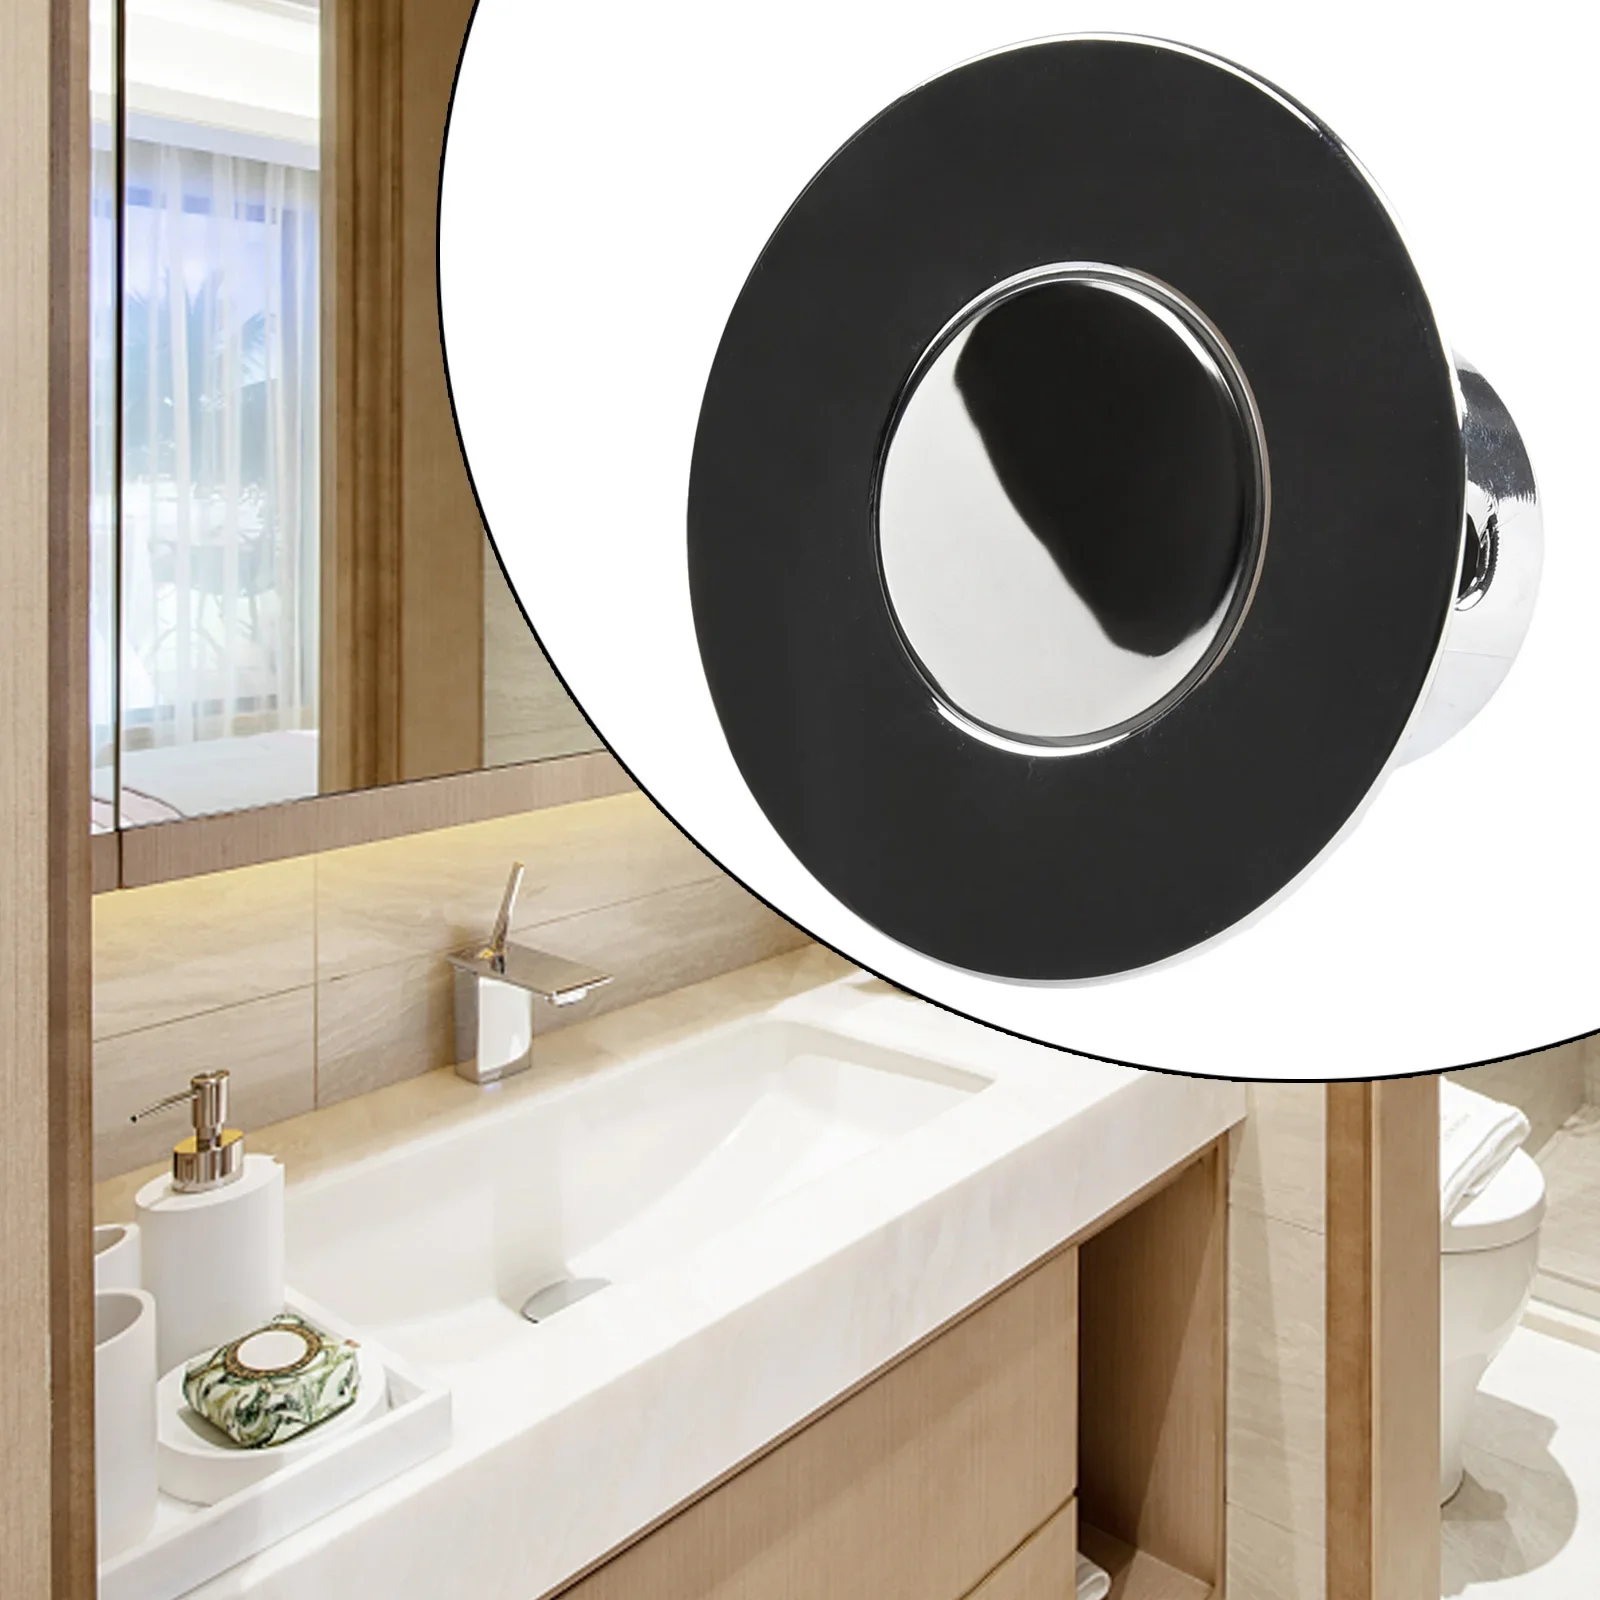 

Universal Bathroom Sink Plug Stopper Basin Pop-up Drain Filter Bathroom Shower Sink Filter Plug Wash Basin Hair Sink Strainer